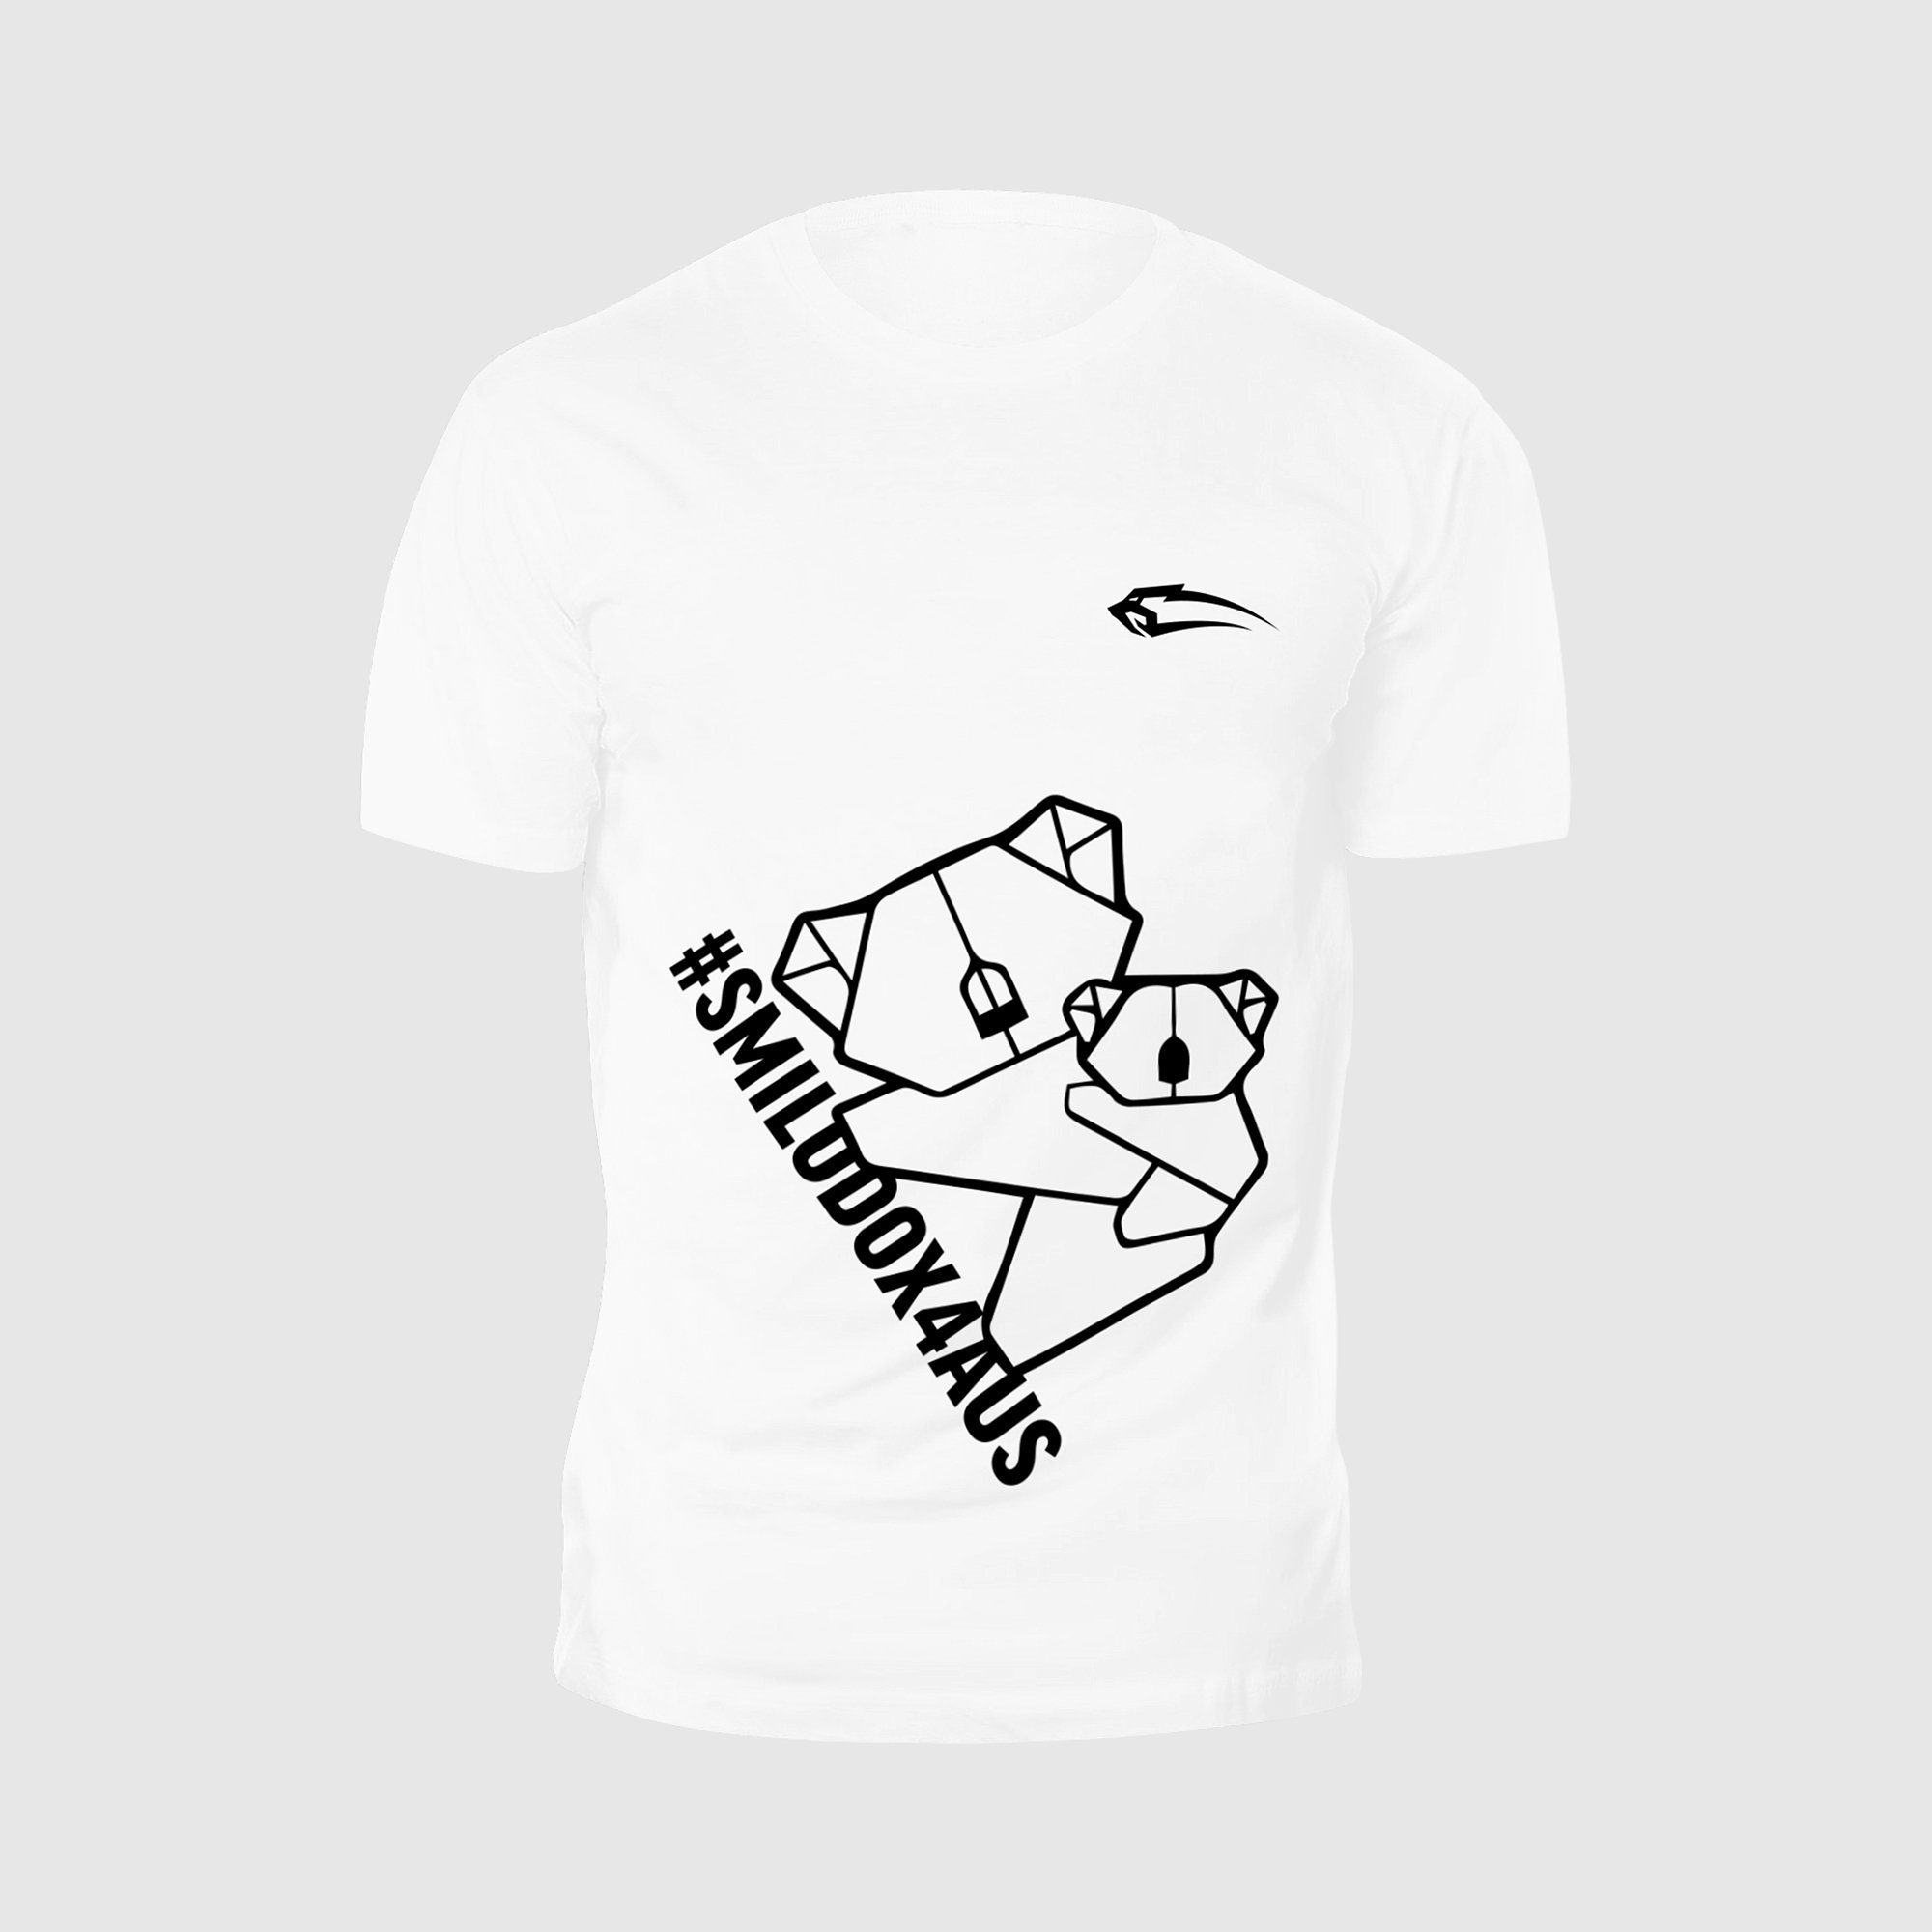 Herren Shirts Smilodox T-Shirt For Australien 100% Baumwolle